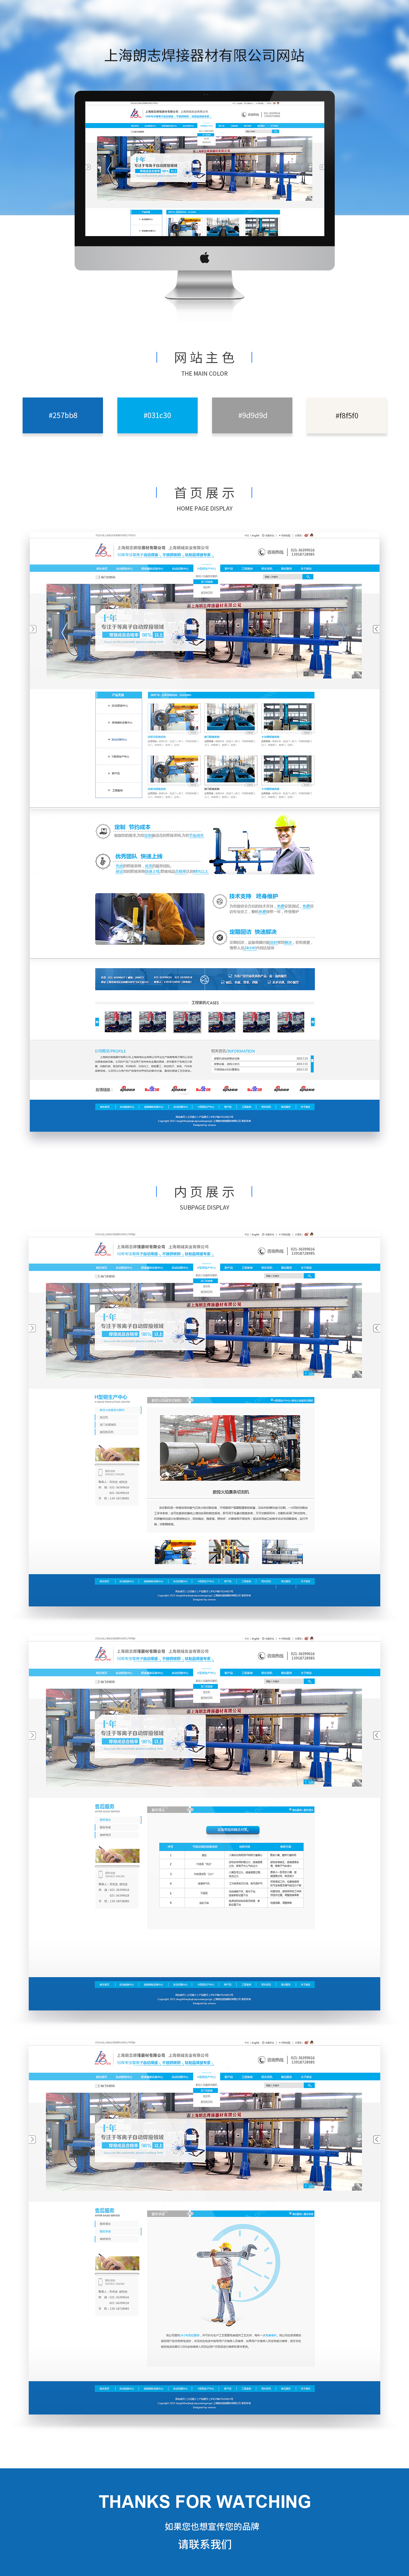 公司网站建设案例之朗志焊接器材公司